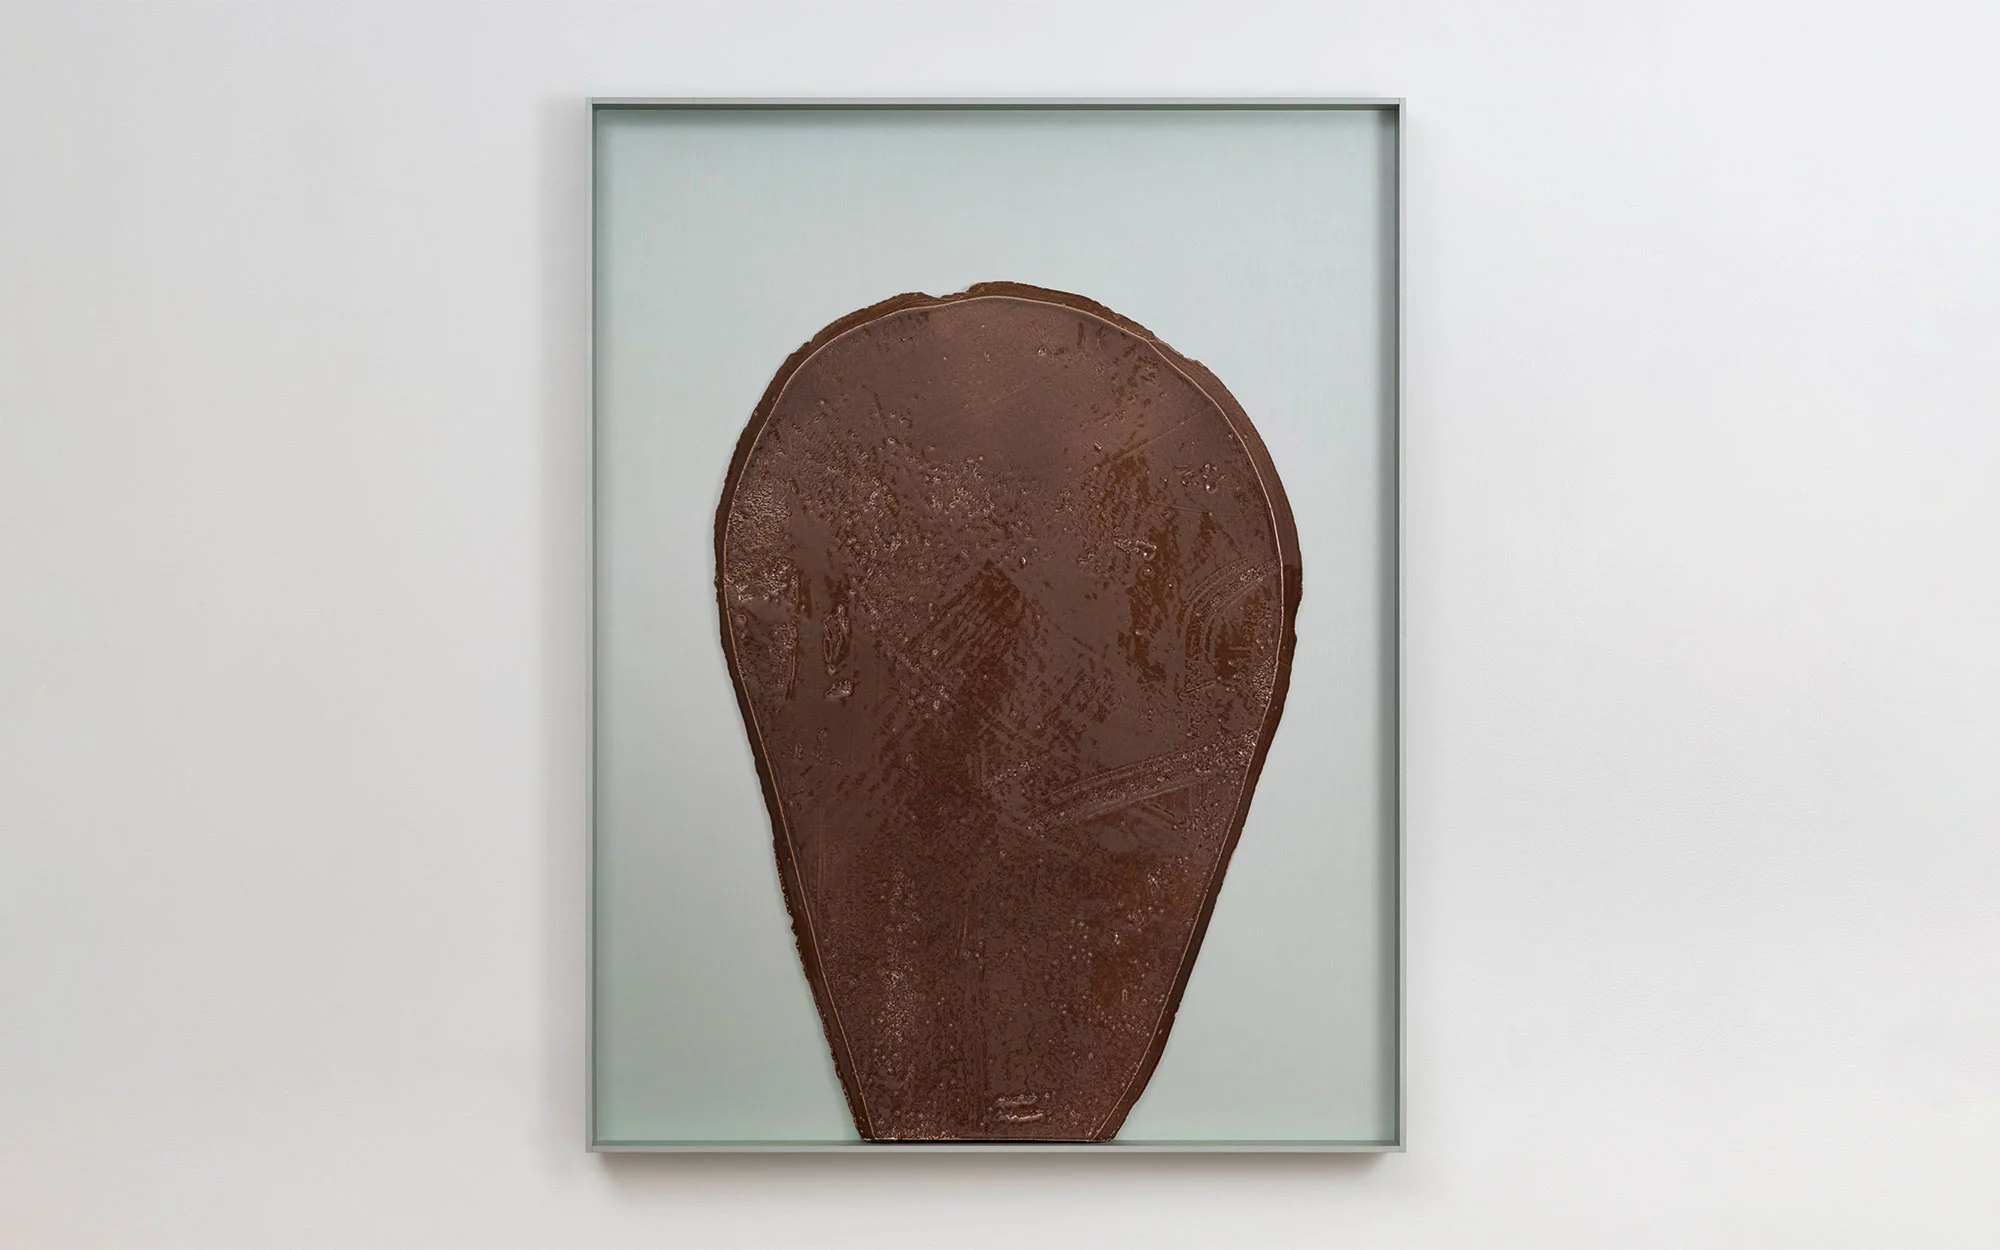 Bas-Relief MEDIUM - Ronan Bouroullec - Vase - Galerie kreo